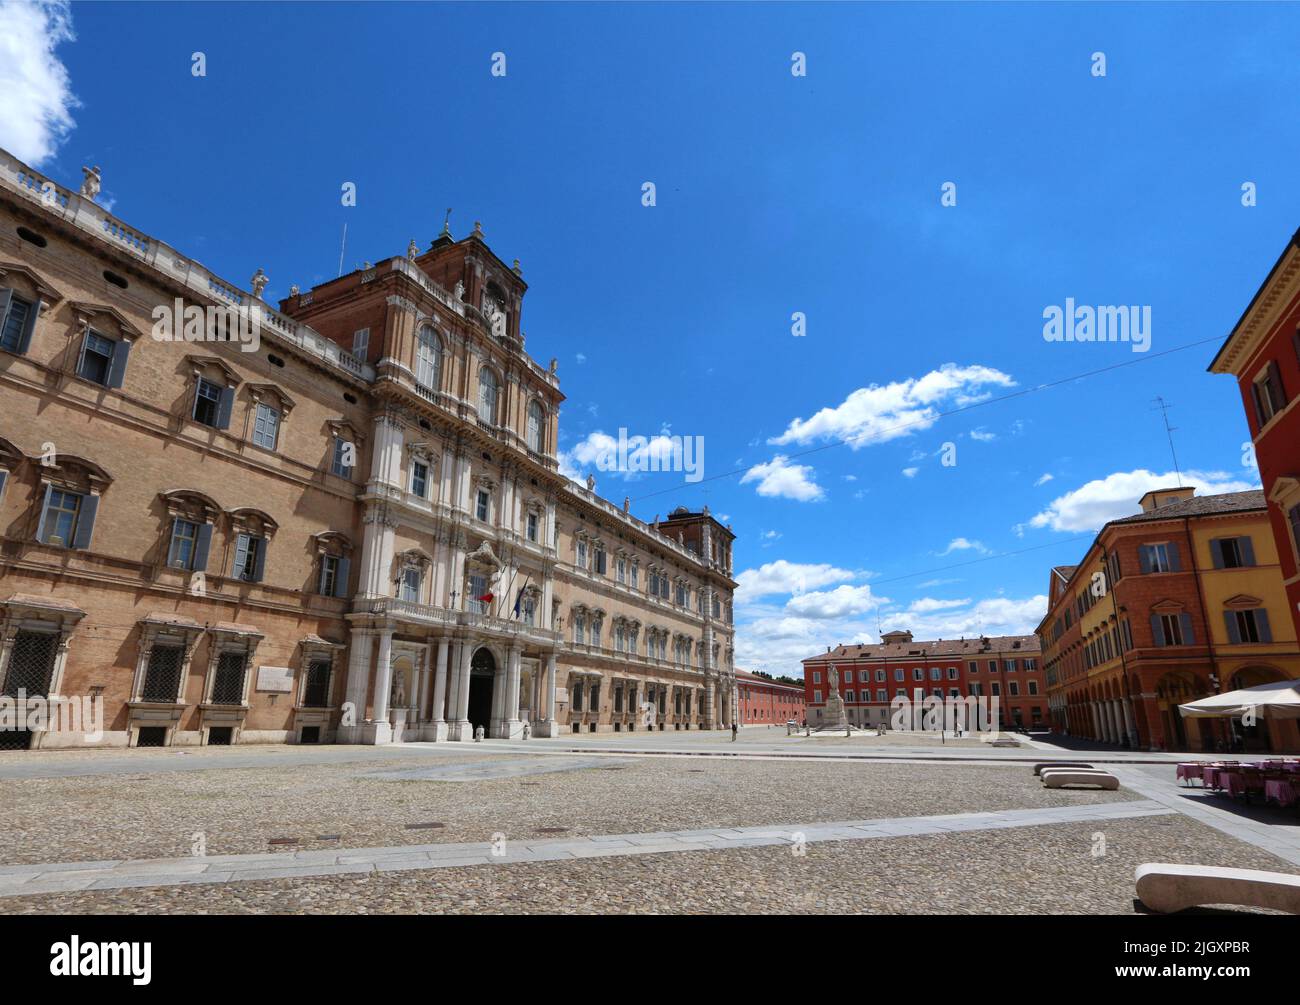 Módena, Emilia-Romagna, Italia, panorama de la Piazza Roma con en el fondo la fachada del antiguo palacio ducal, ahora la Academia Militar, turista Foto de stock